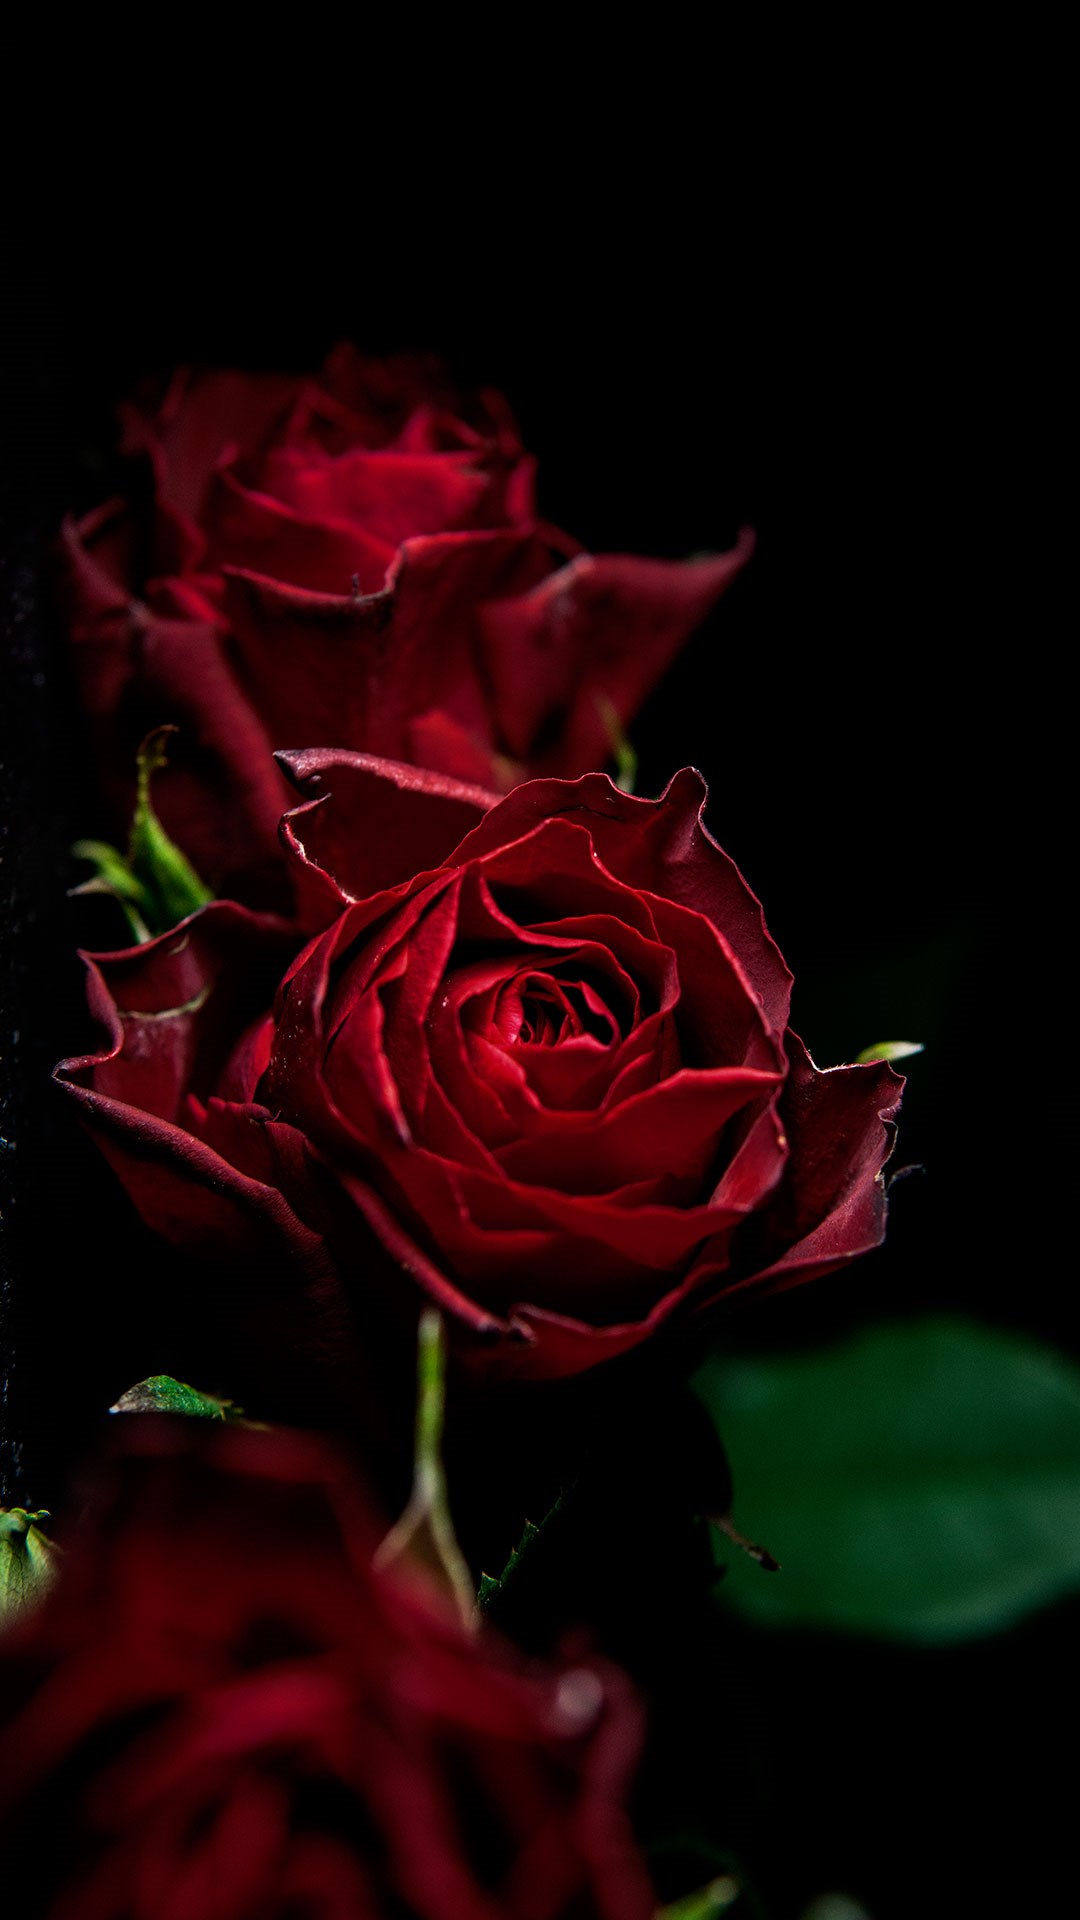 dark red roses - portrait